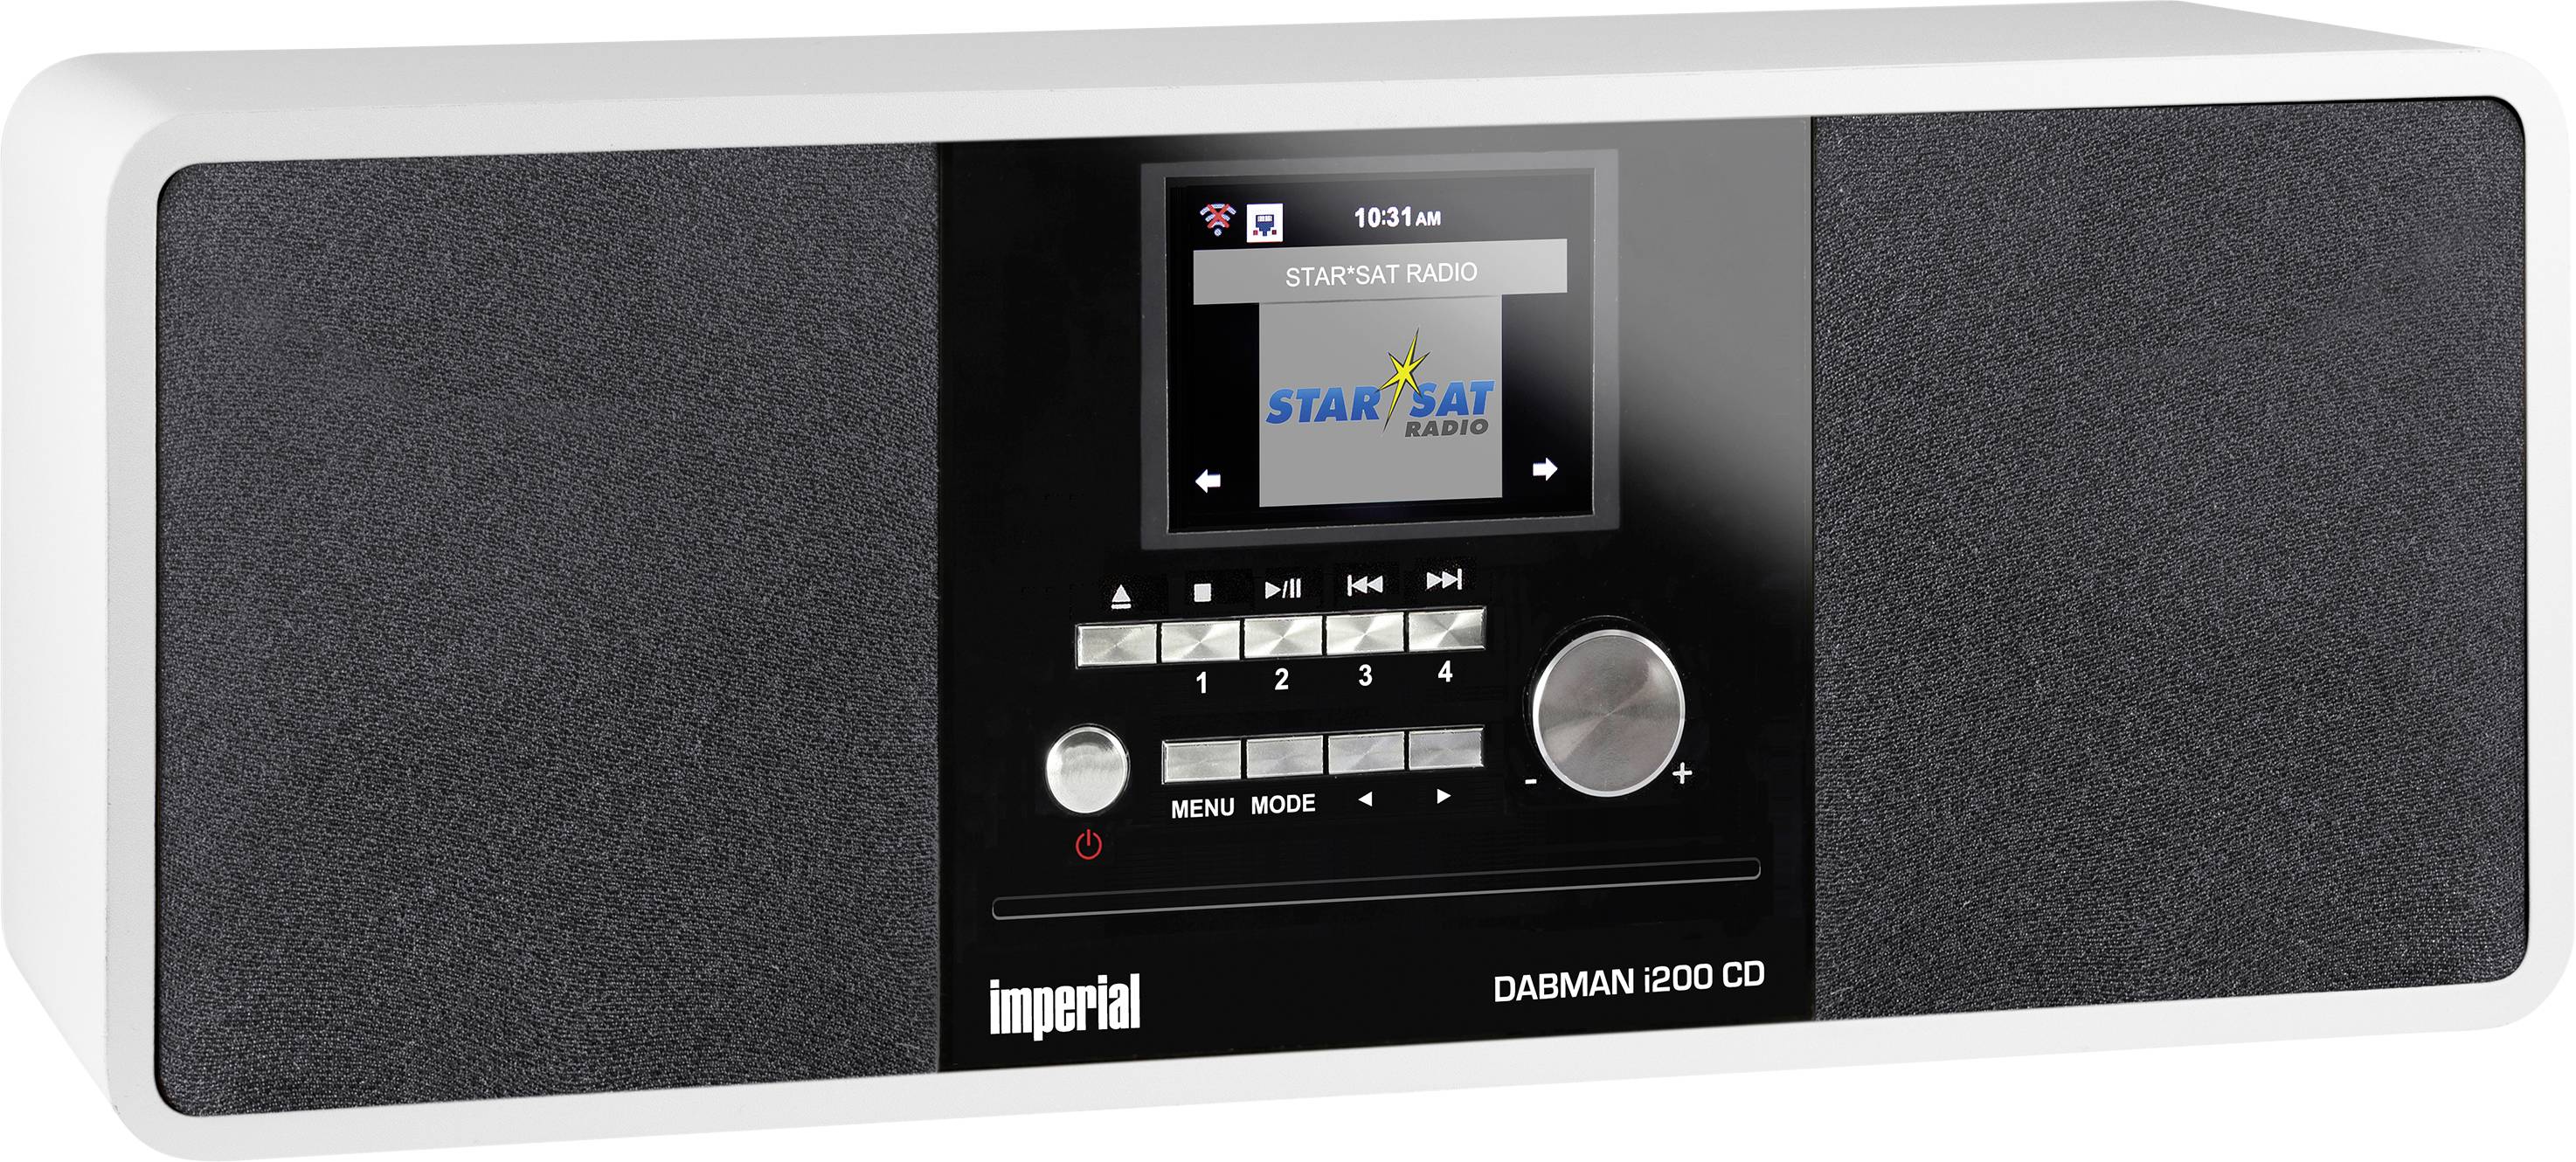 TELESTAR DIGITAL Imperial DABMAN i200 CD ws DAB+ Hybrid Internet FM Tuner CD